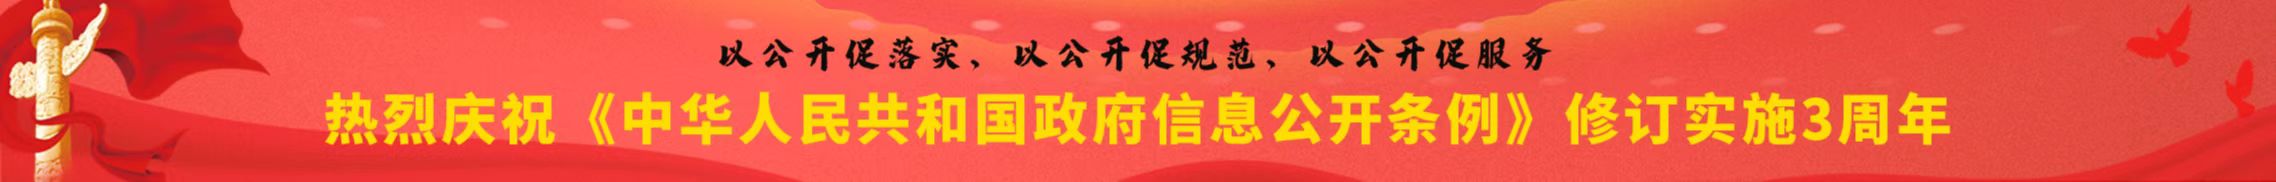 热烈庆祝《中华人民共和国政府信息公开条例》修订实施3周年